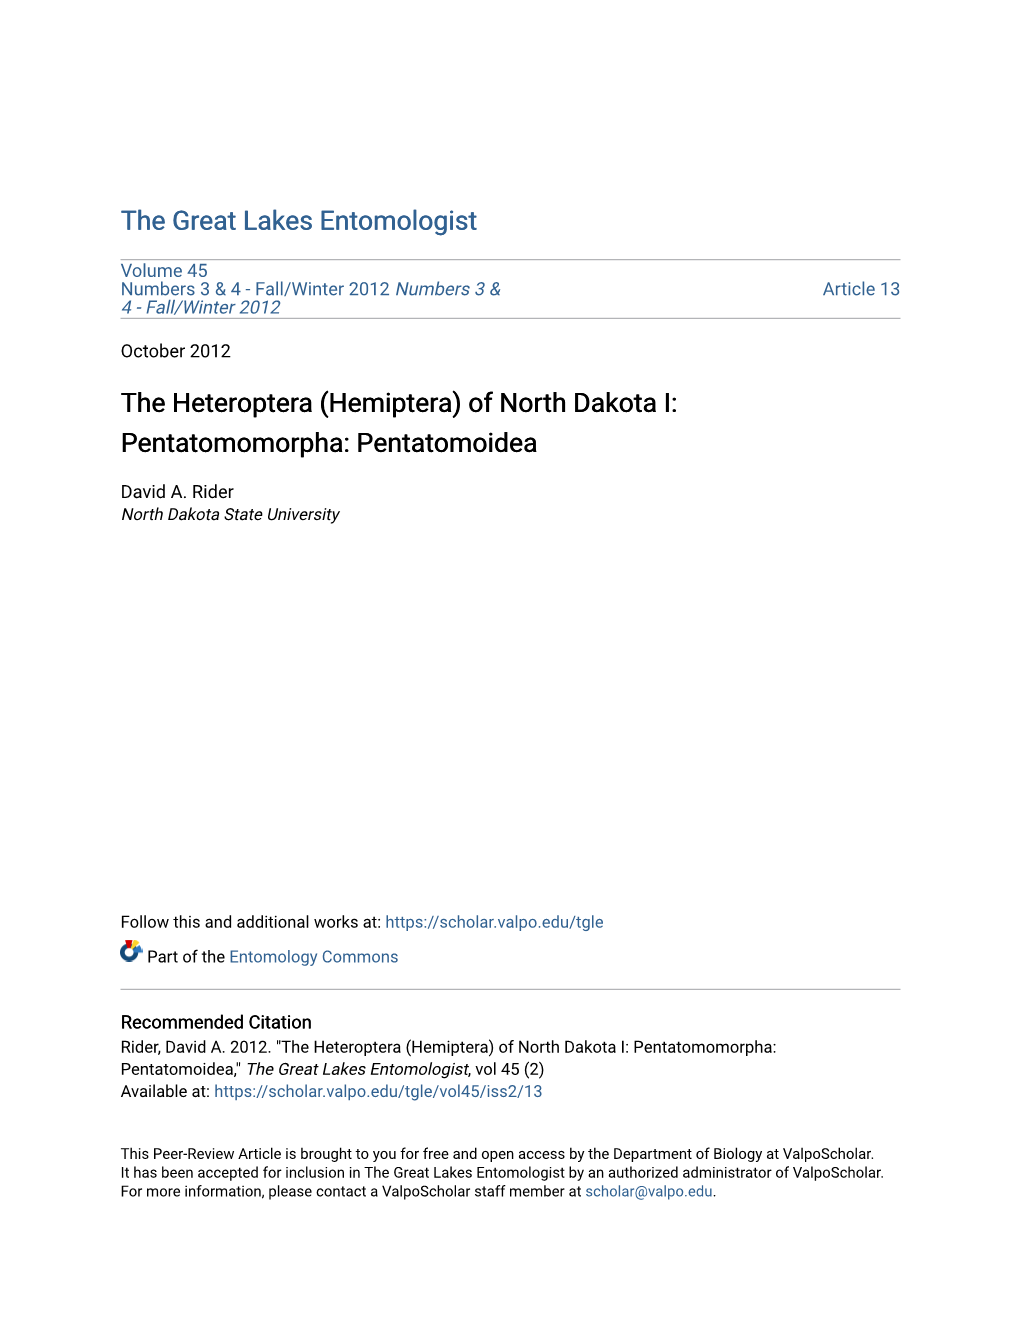 The Heteroptera (Hemiptera) of North Dakota I: Pentatomomorpha: Pentatomoidea